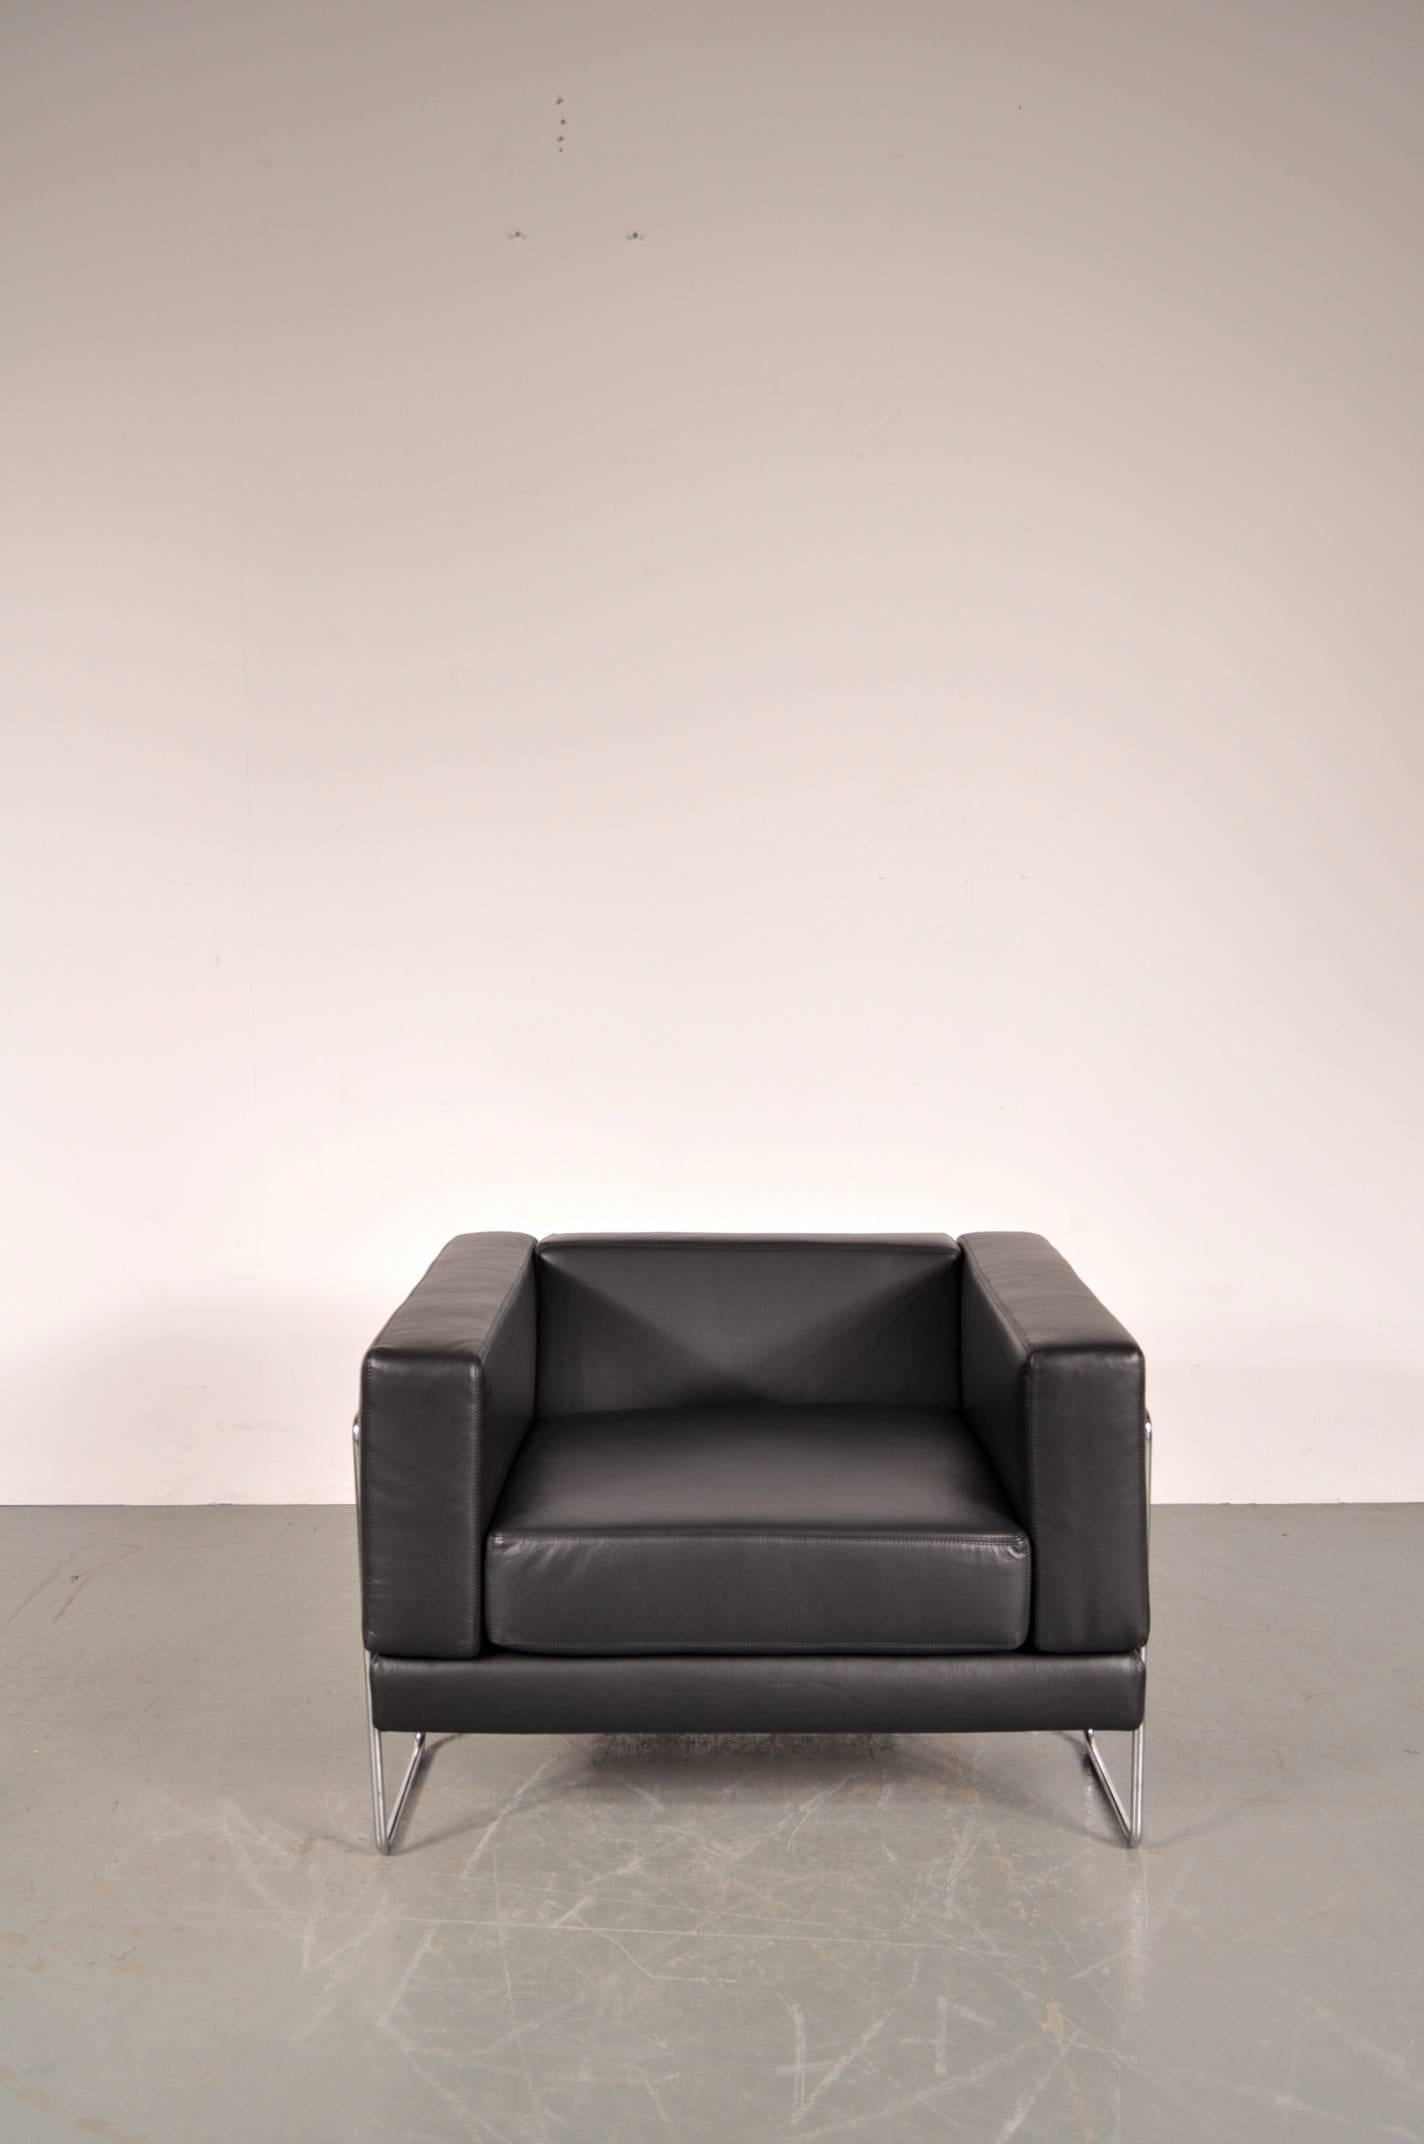 Schöner Loungesessel, entworfen von Kwok Hoï Chan, hergestellt von Steiner in Frankreich im Jahr 1969.

Dieser Stuhl ist neu gepolstert in erstaunlicher Qualität schwarzem Leder. Der verchromte Metallrahmen ist deutlich sichtbar und schafft ein